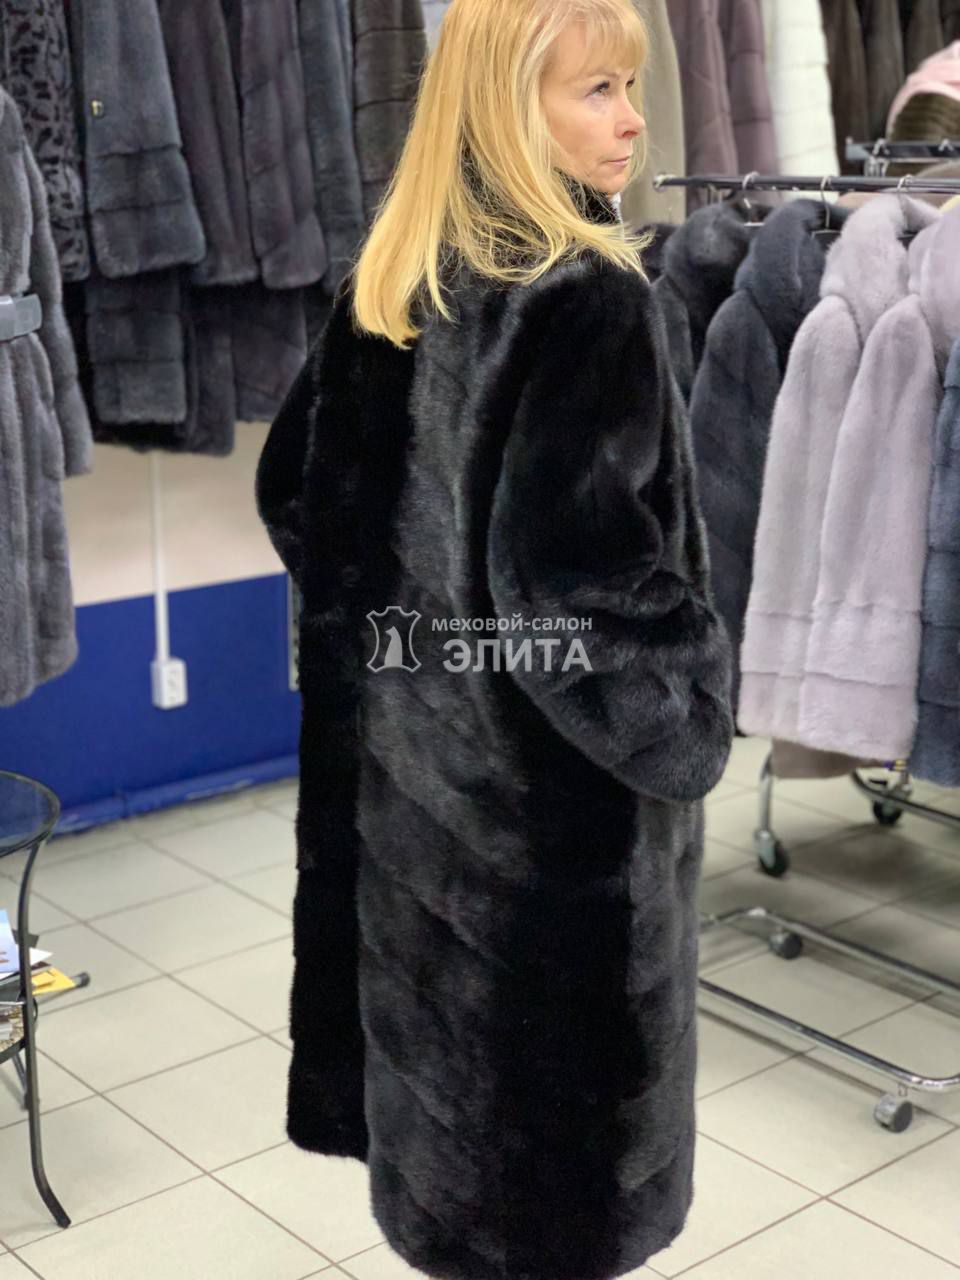 Пальто из норки S-18419 р-р 48-56, цена 120640 рублей в интернет-магазине кожи и меха ЭЛИТА. Вид 2